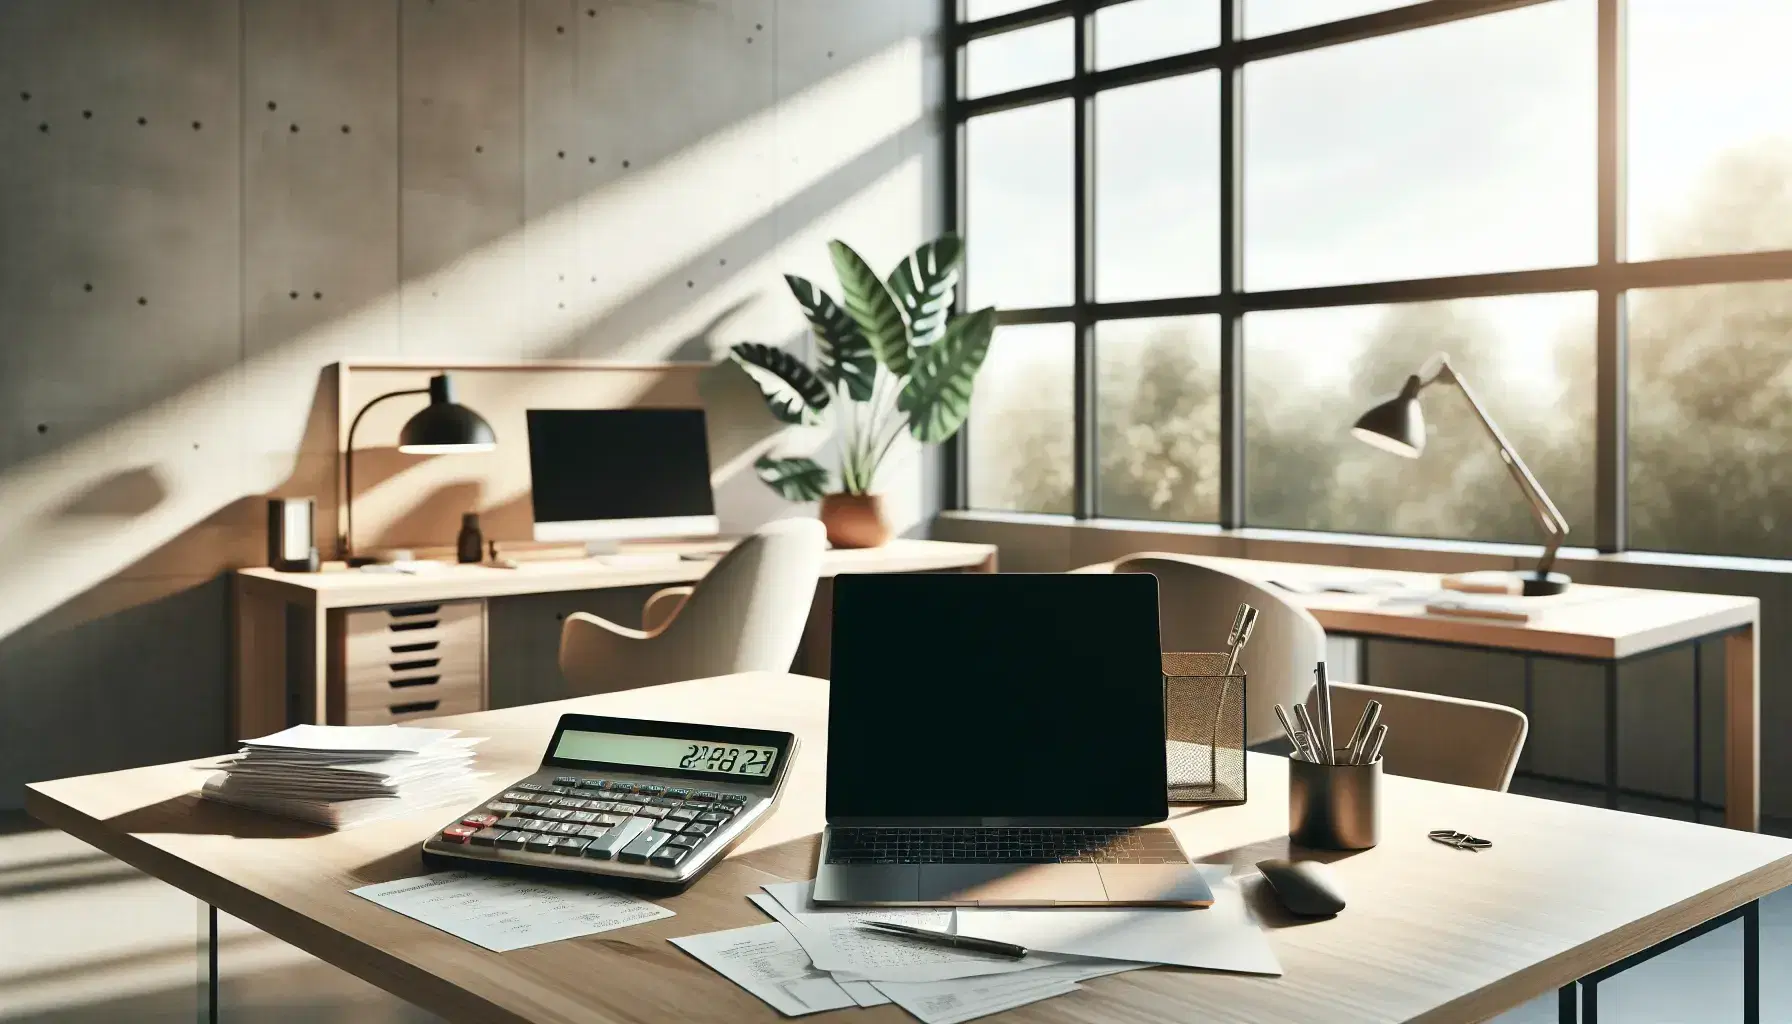 Oficina moderna con escritorio de madera, calculadora gris, papeles apilados, laptop abierto y teléfono fijo, junto a planta interior y luz natural.